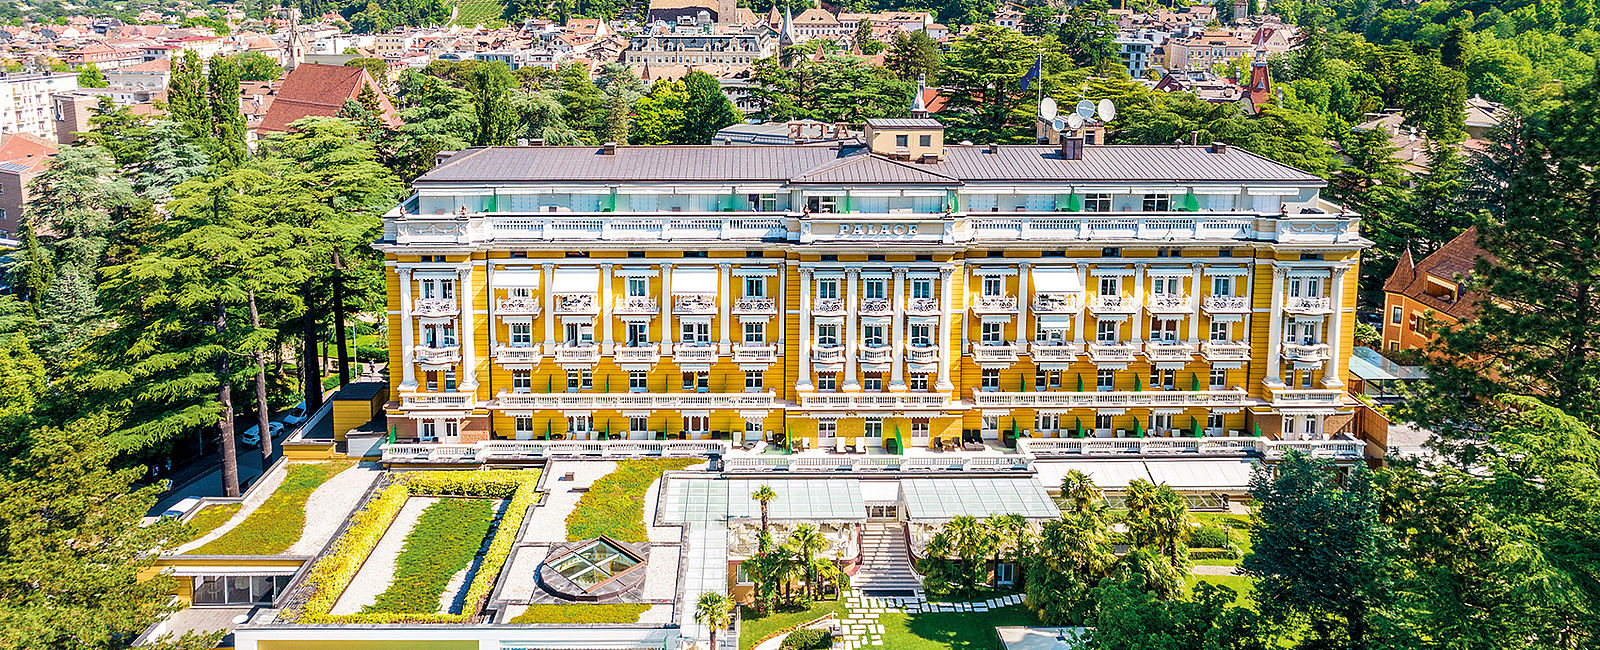 VERY SPECIAL HOTEL
 Palace Merano 
 Erholung zwischen Natur und Historie 